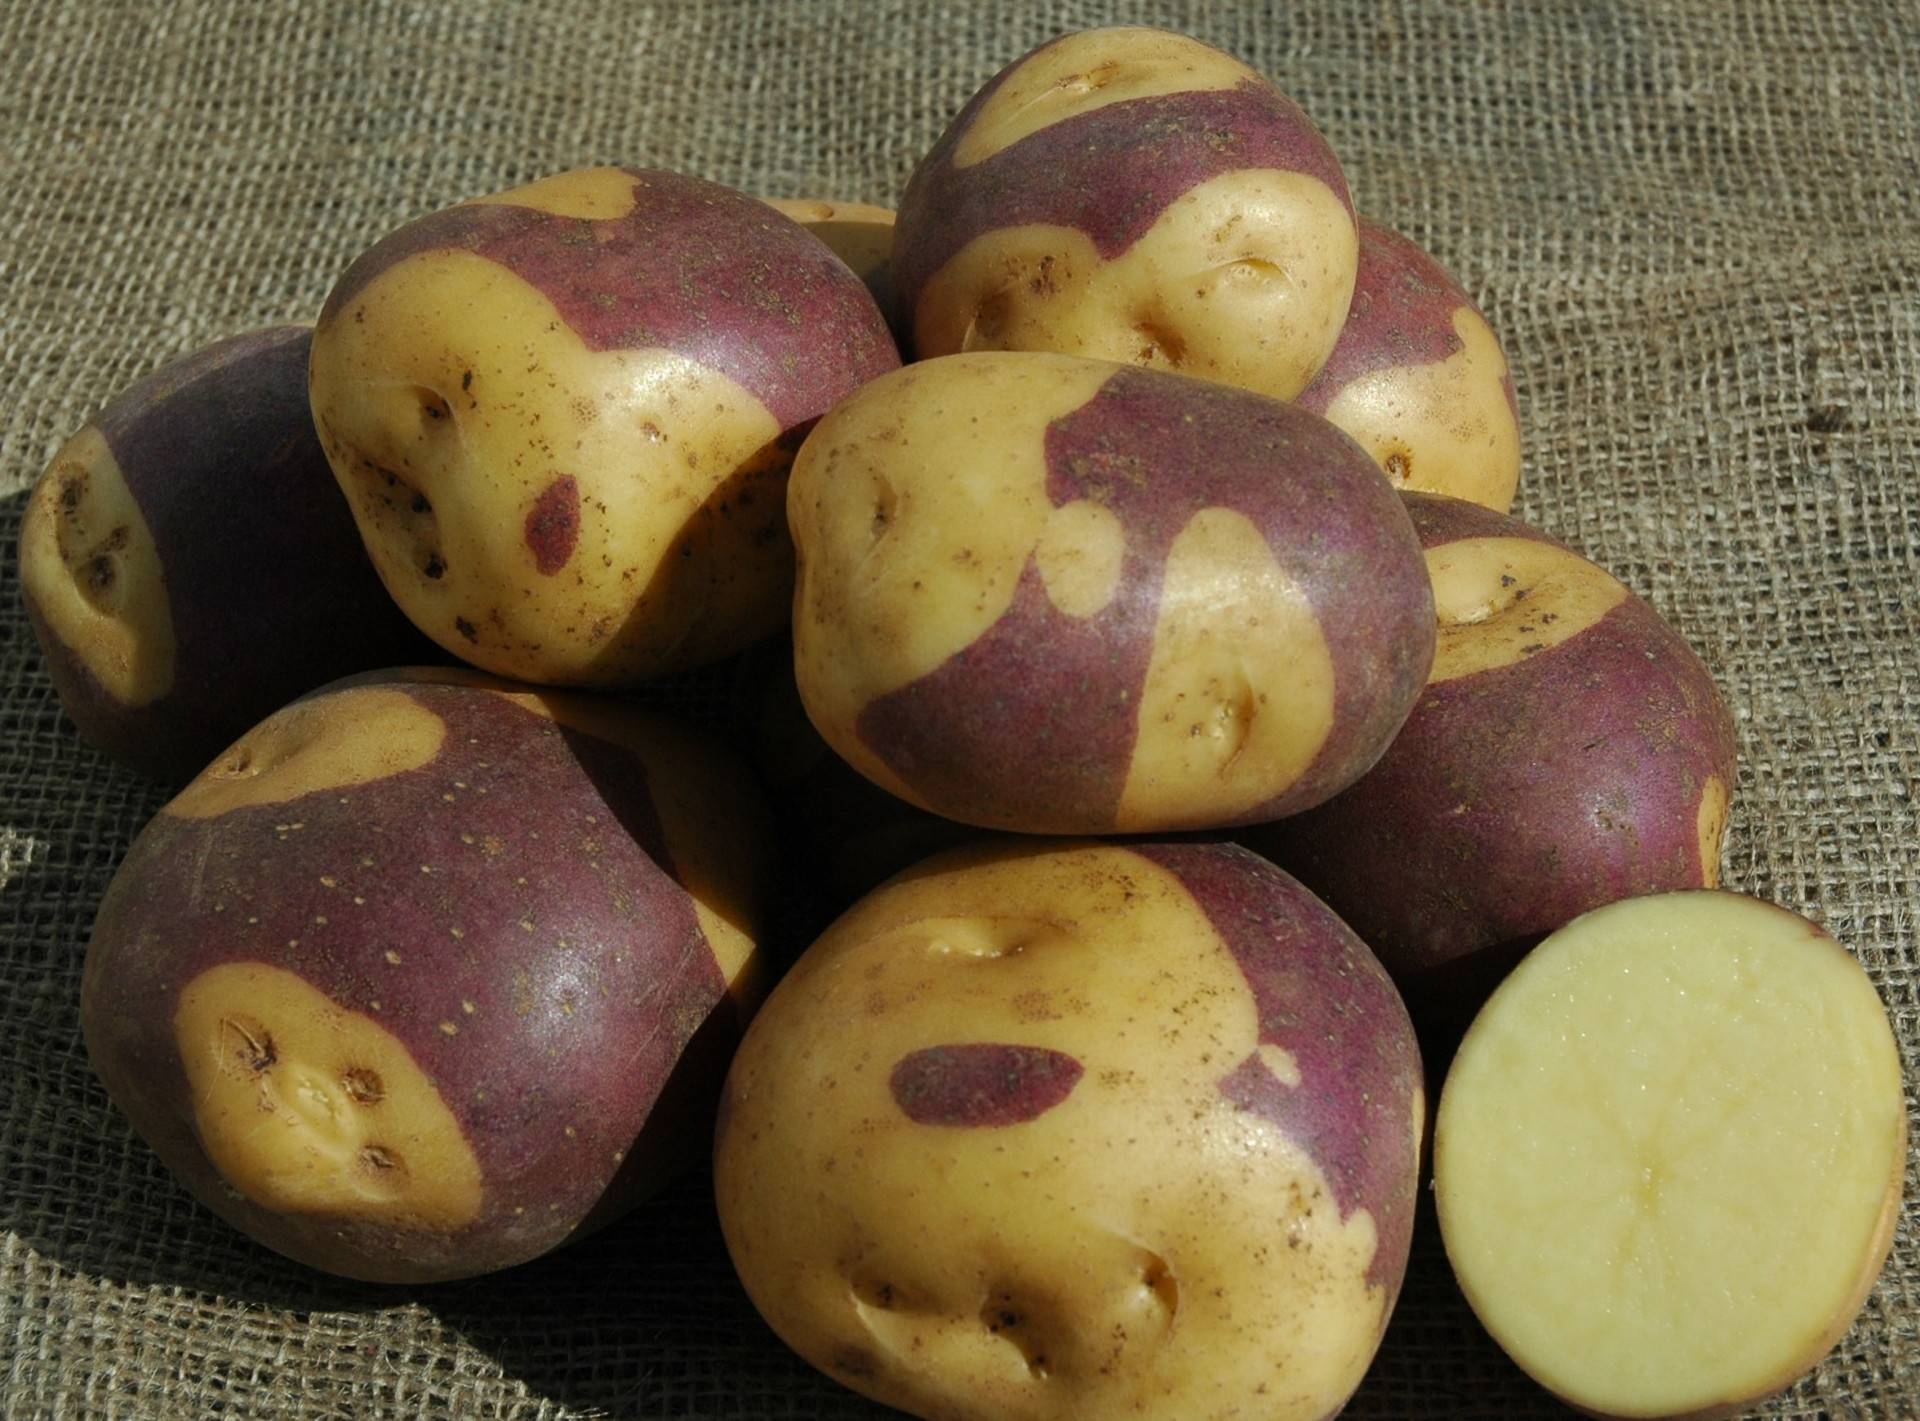 Описание и характеристика сортов фиолетовой или синей картошки, полезные свойства